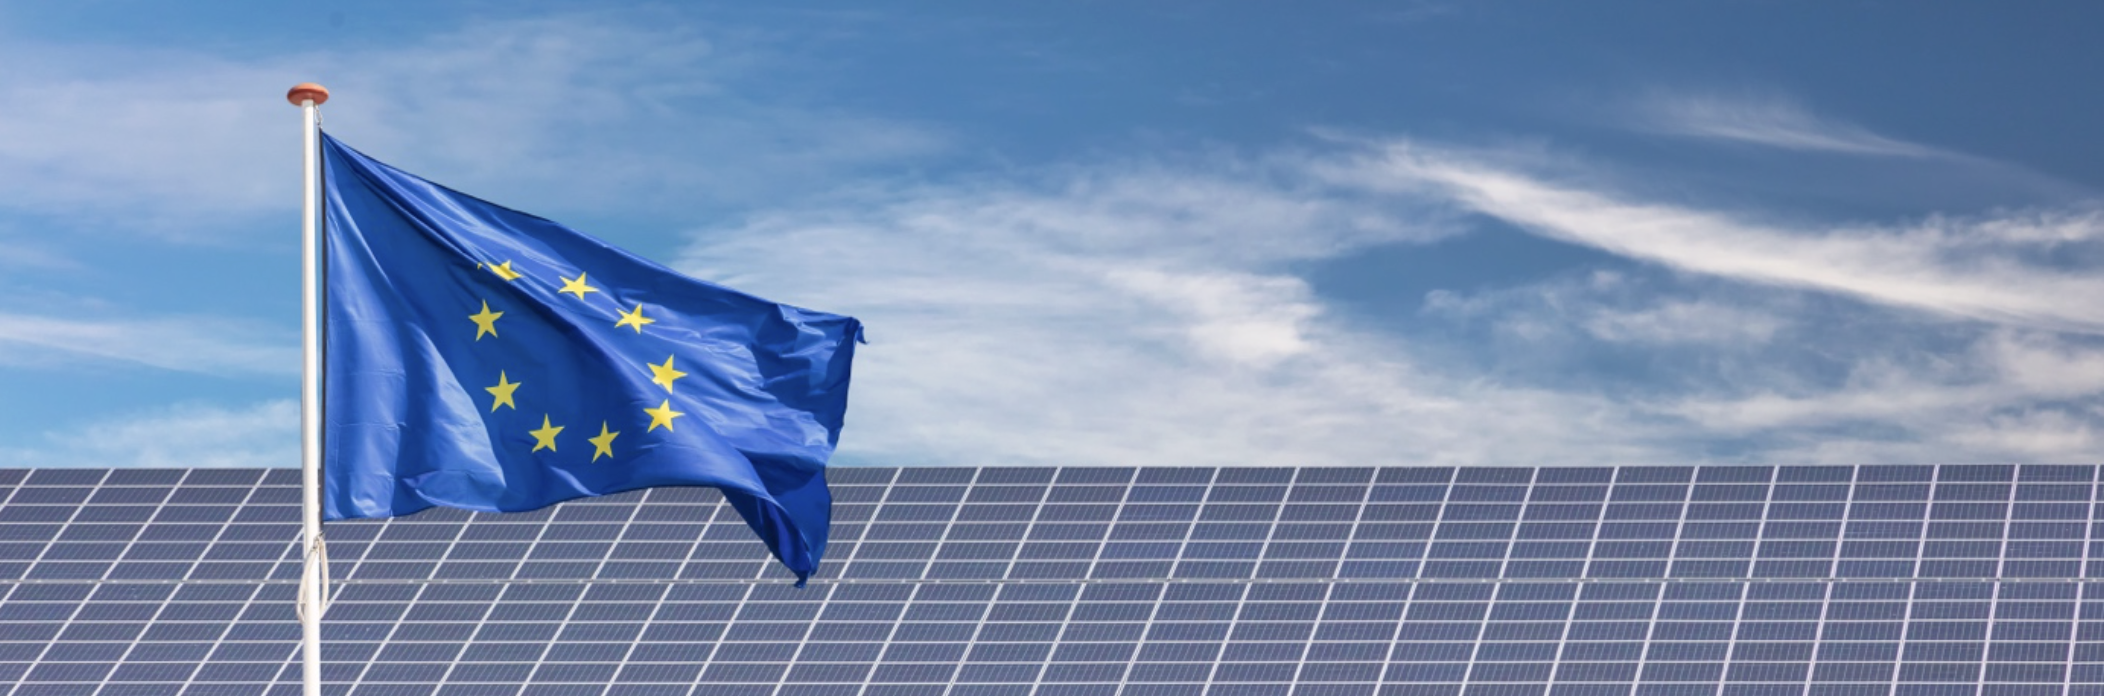 Fotovoltaika na vzestupu. Česko vyjednává s Evropskou komisí financování dalších fotovoltaických projektů